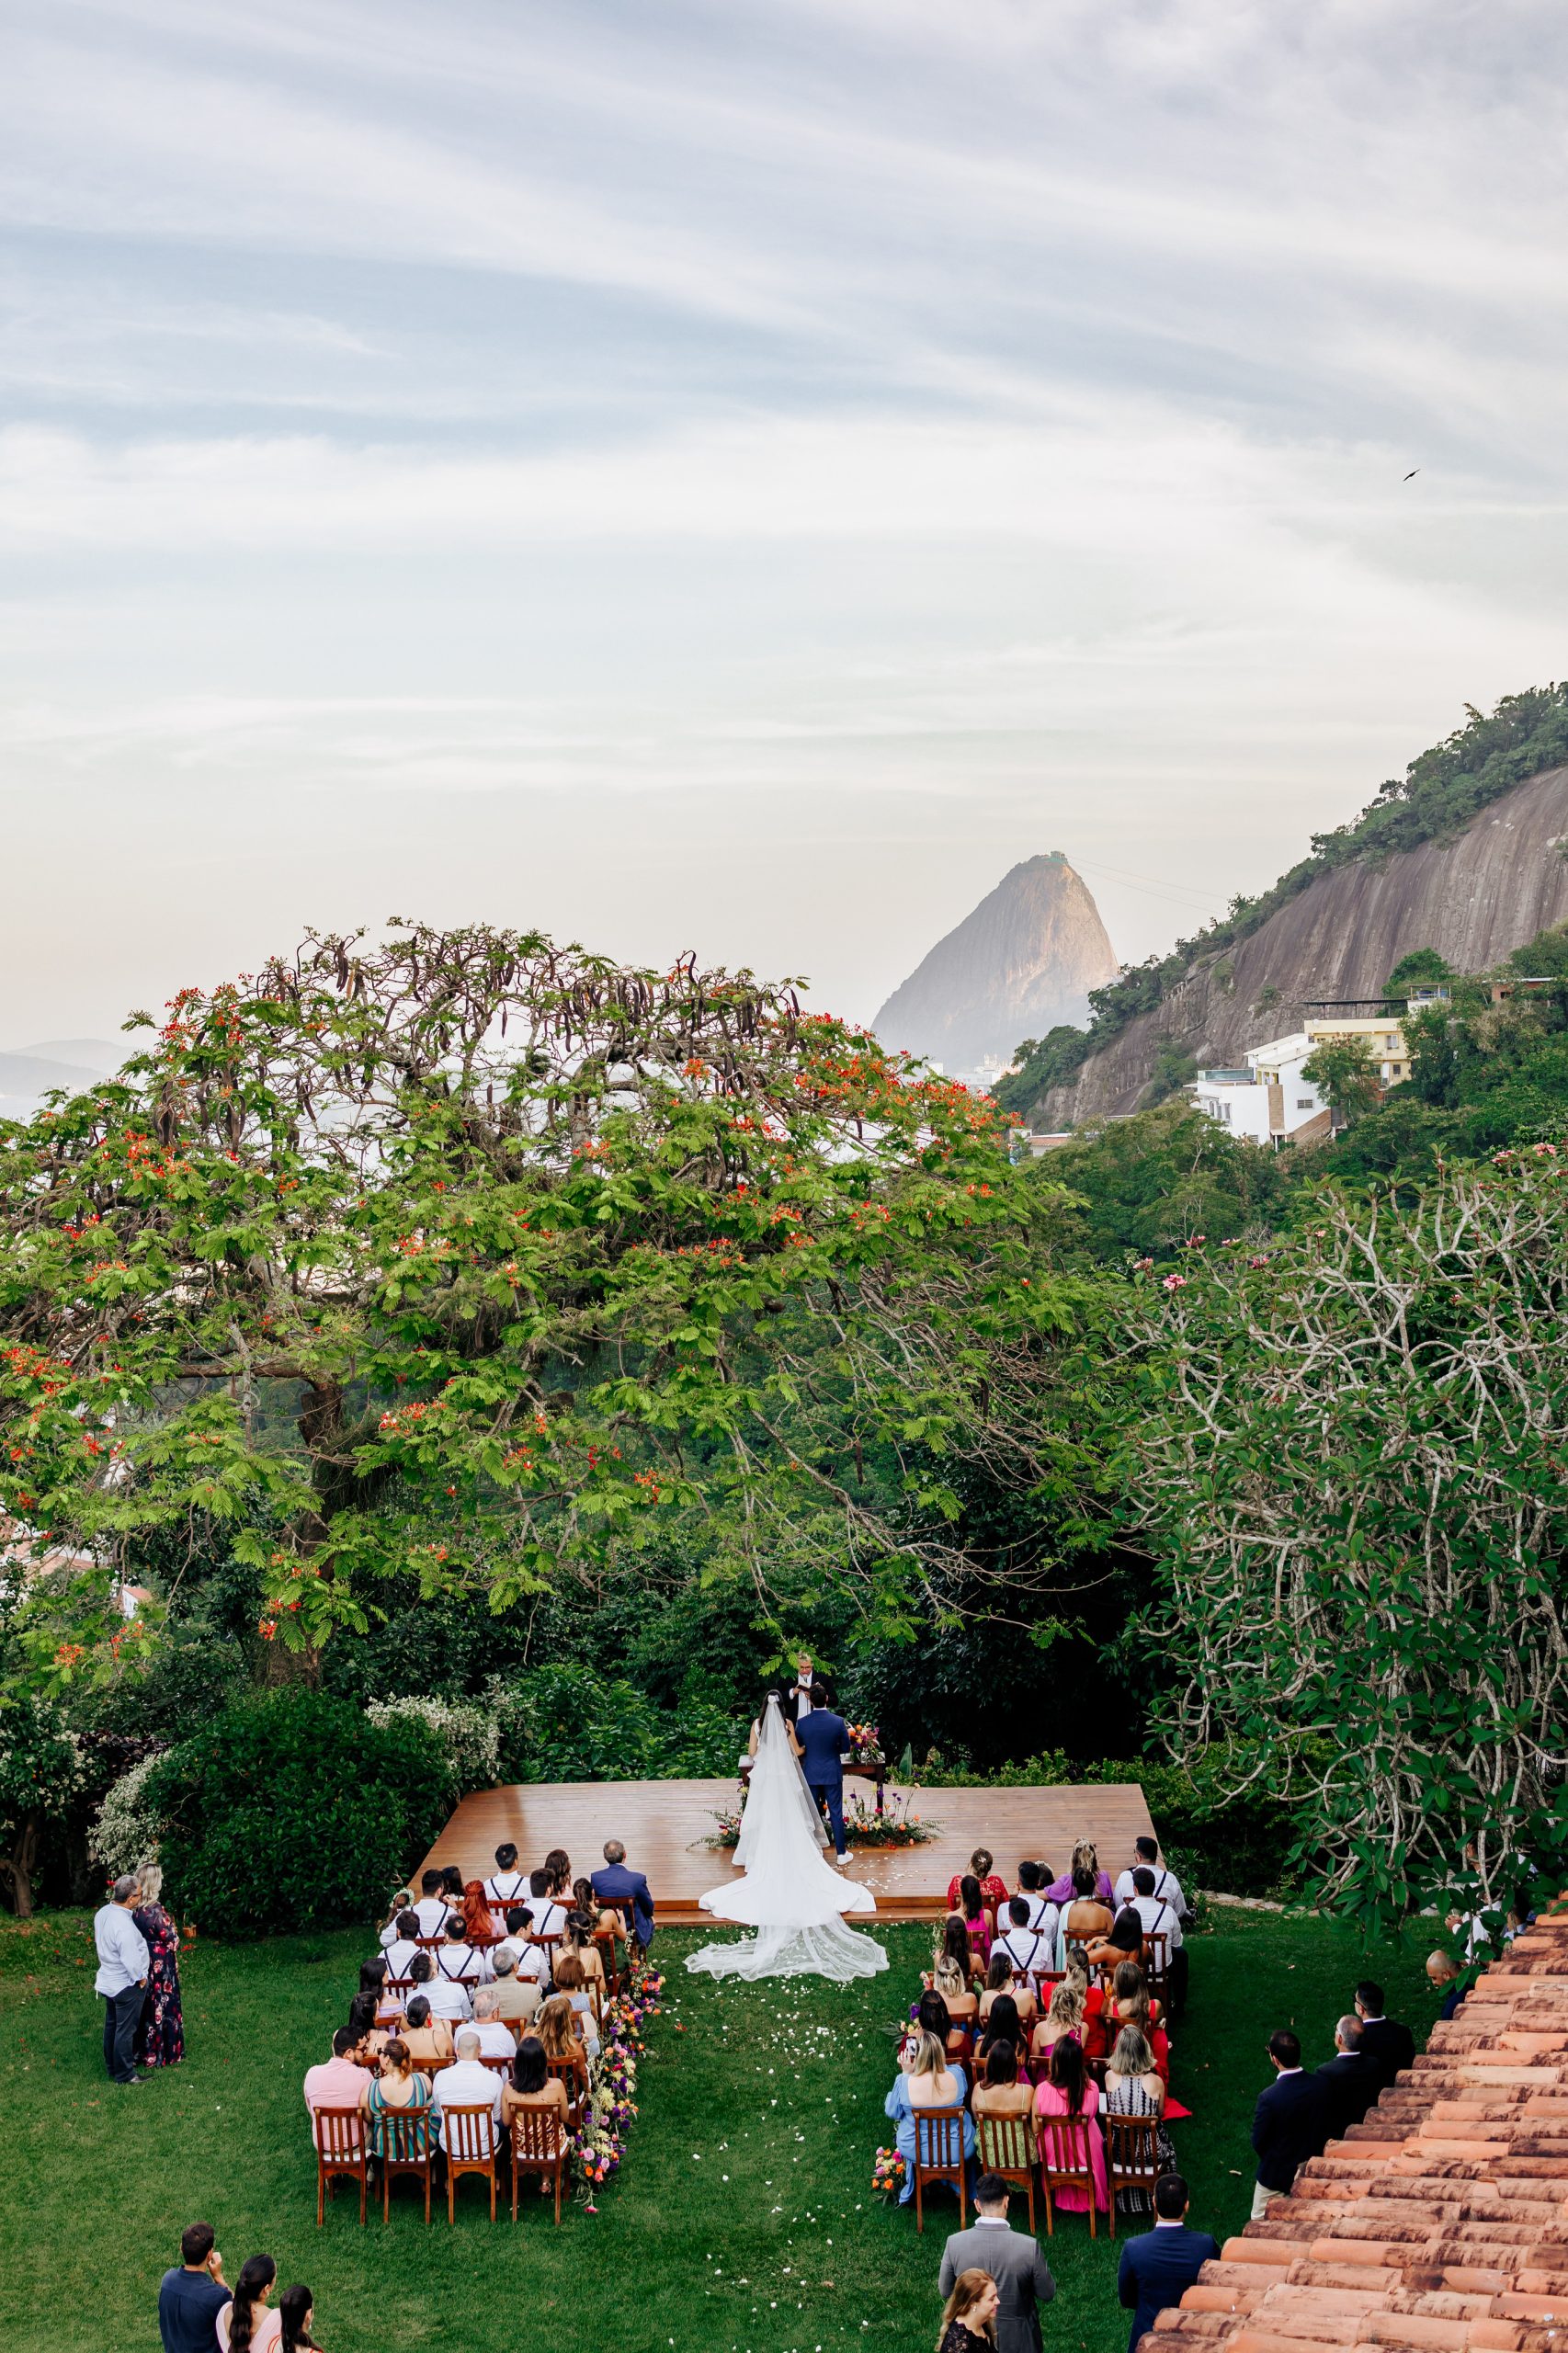 Vista panorâmica do casamento para as paisagens verdes do Rio de Janeiro | Foto: Anderson Marcelo